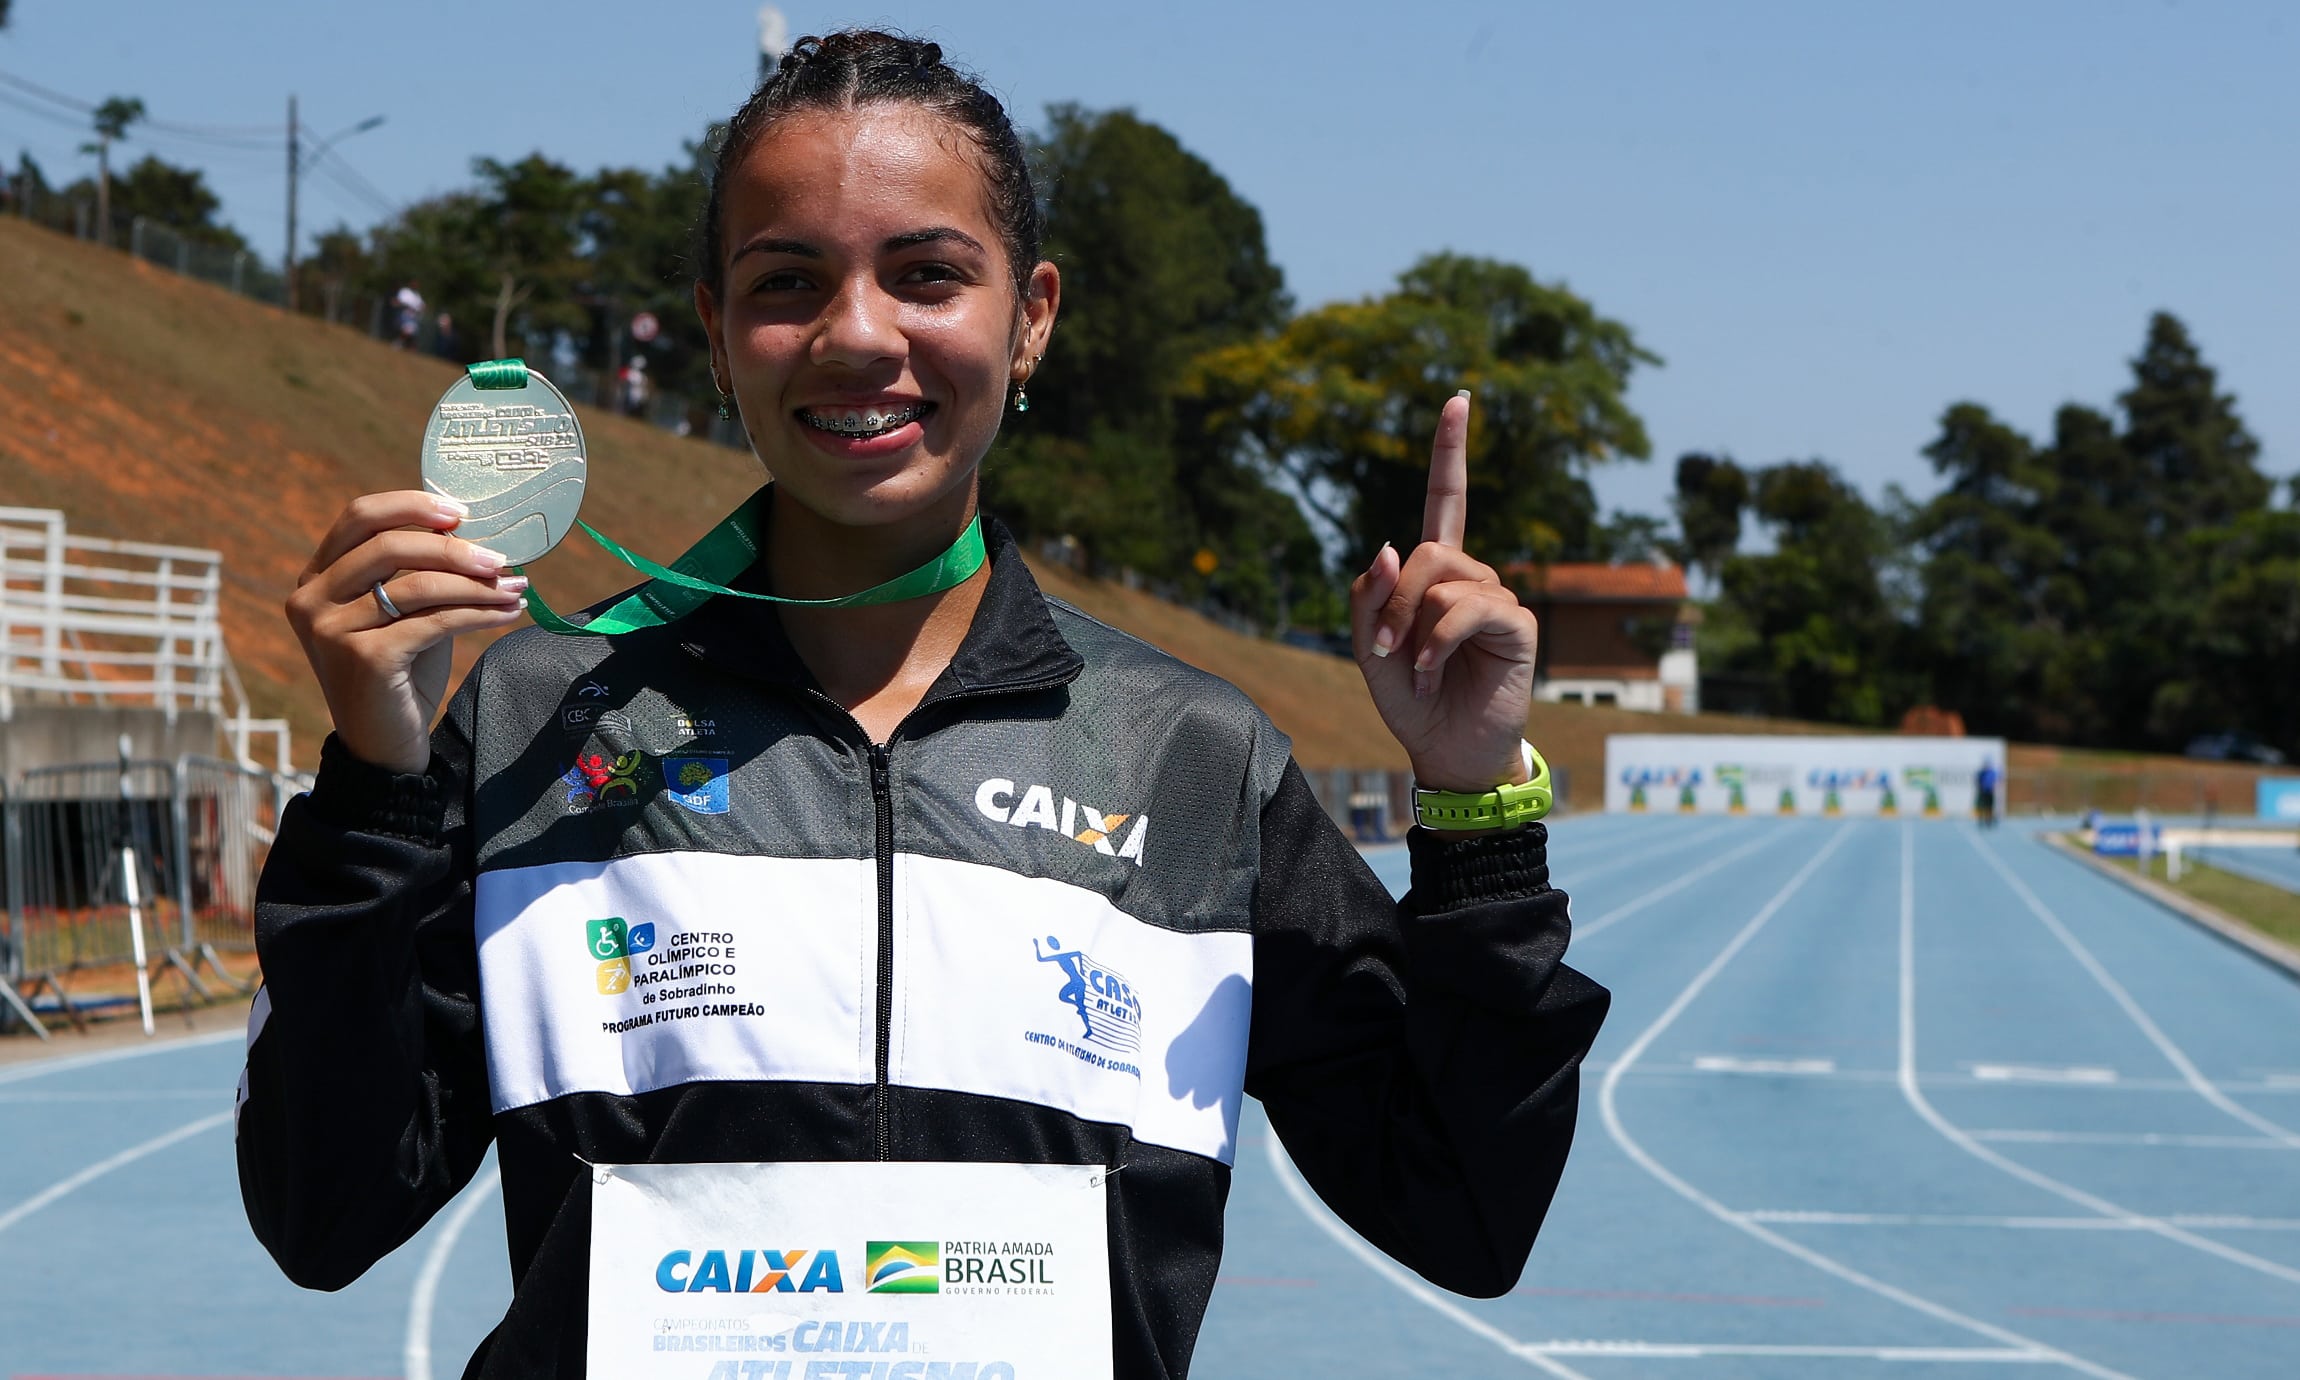 Gabriela Muniz marcha atlética campeã bicampeã brasileiro sub-20 de atletismo